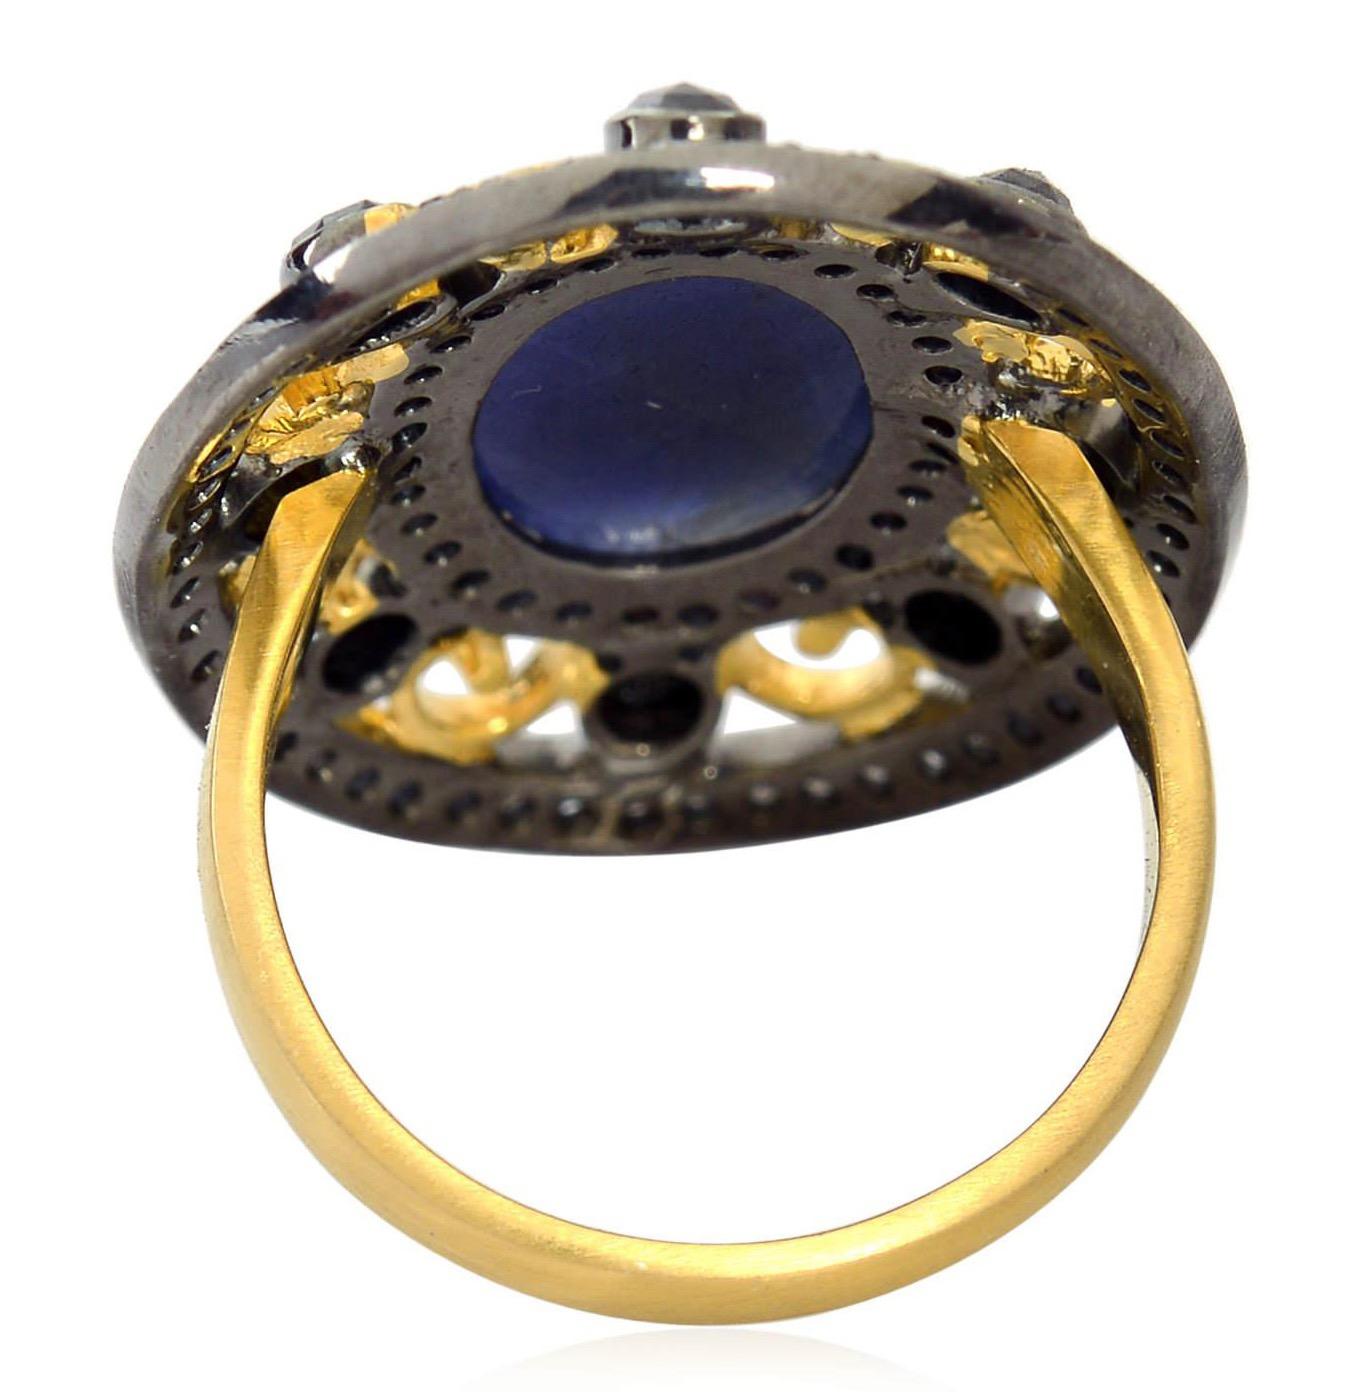 Dieser Ring wurde sorgfältig aus 18-karätigem Gold und Sterlingsilber mit geschwärztem Finish gefertigt. Handgefertigt aus 6,25 Karat Saphiren und beleuchtet mit 1,57 Karat Diamanten. 

Der Ring hat die Größe 7 und kann auf Anfrage größer oder